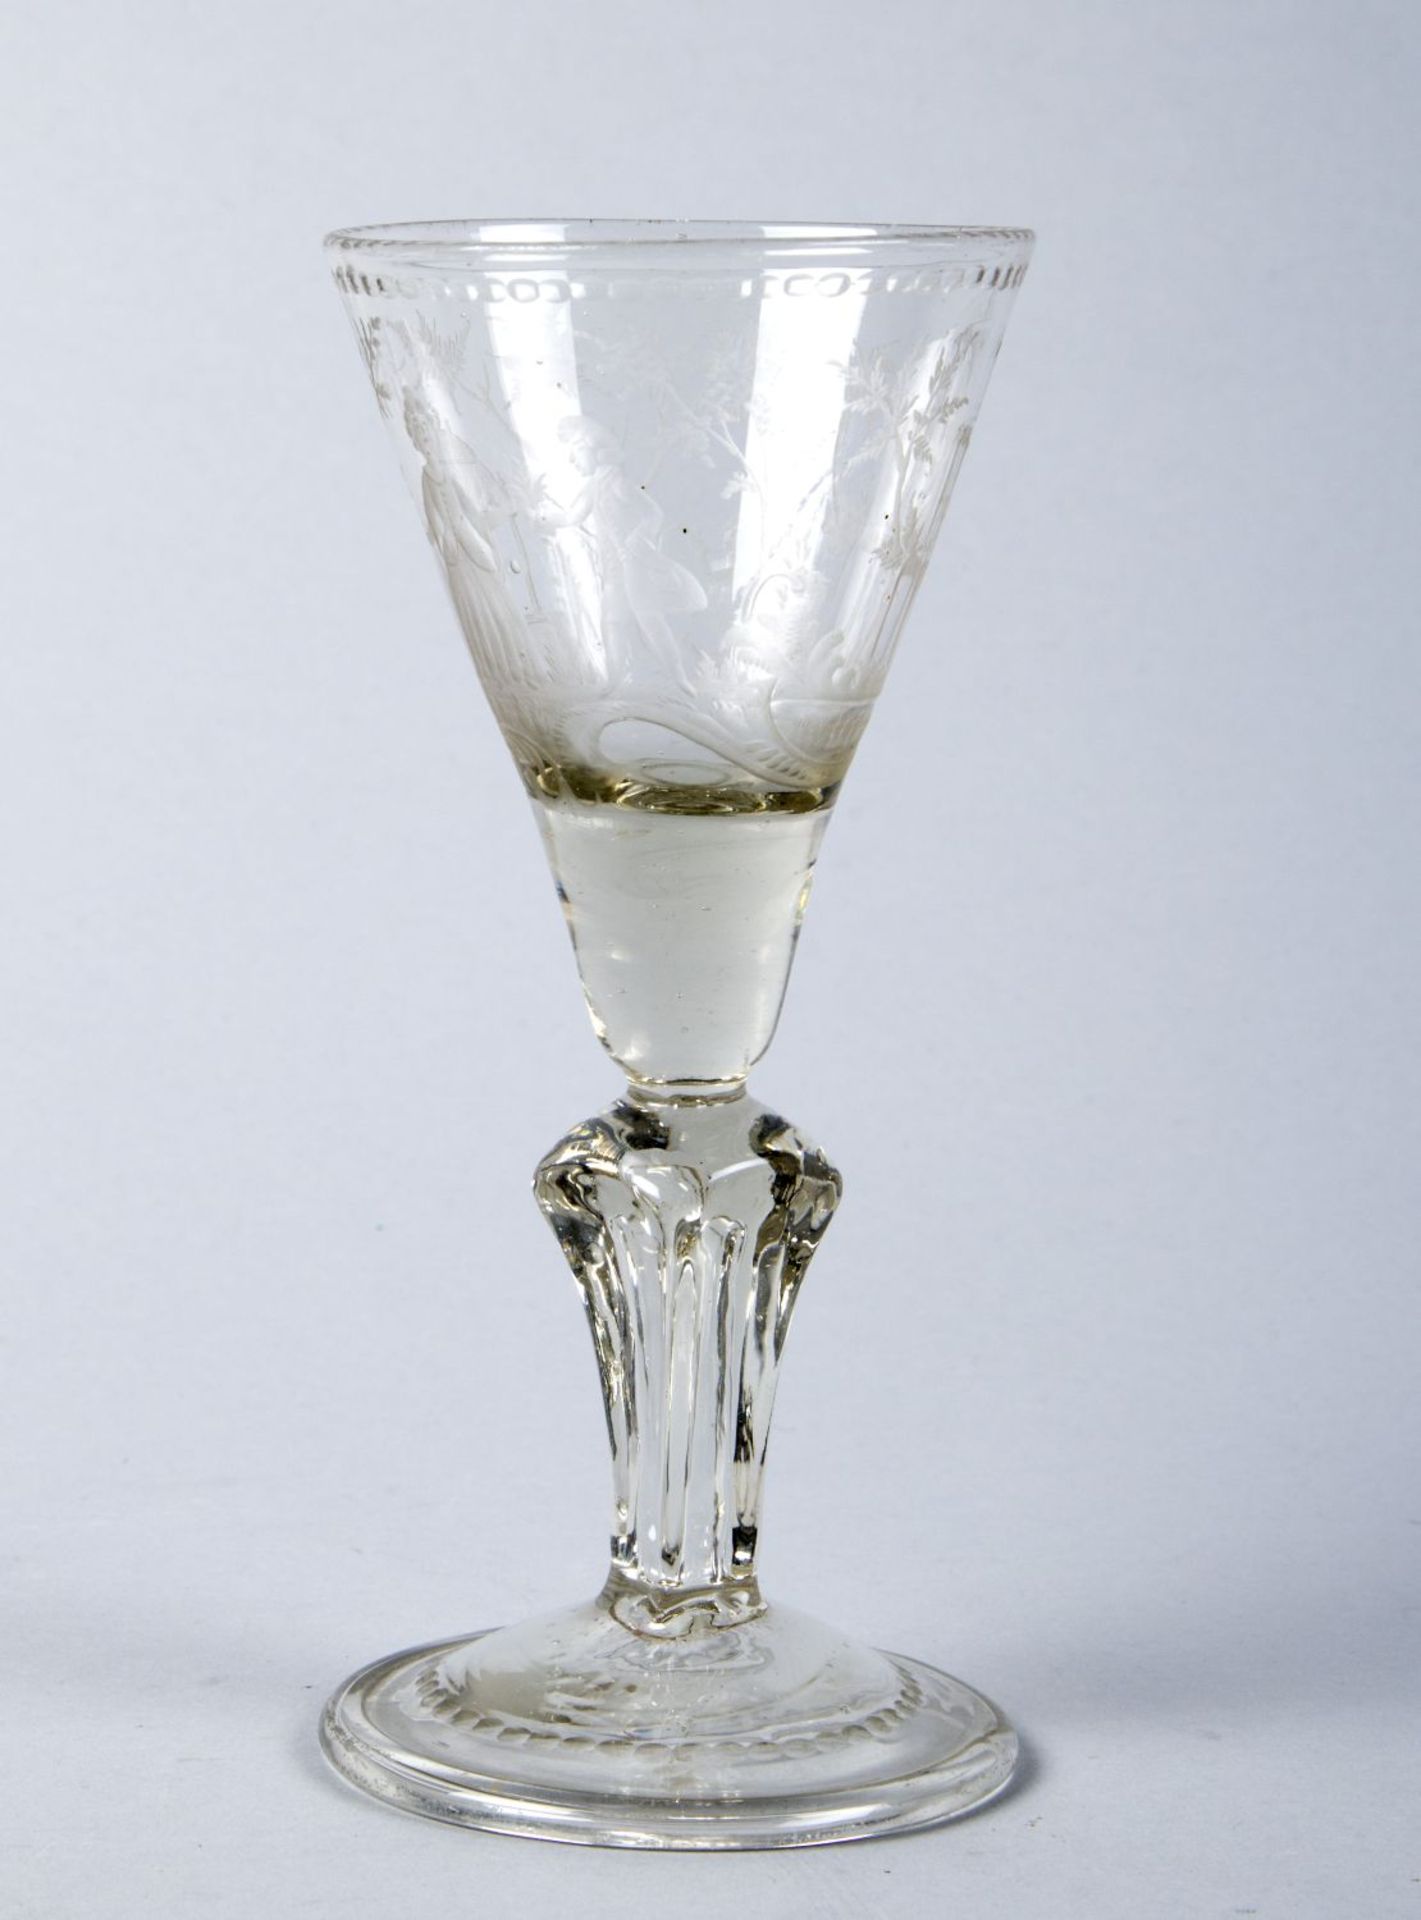 Kleiner PokalFarbloses, leicht braunstichiges Glas. Leicht gewölbter Scheibenfuß mit